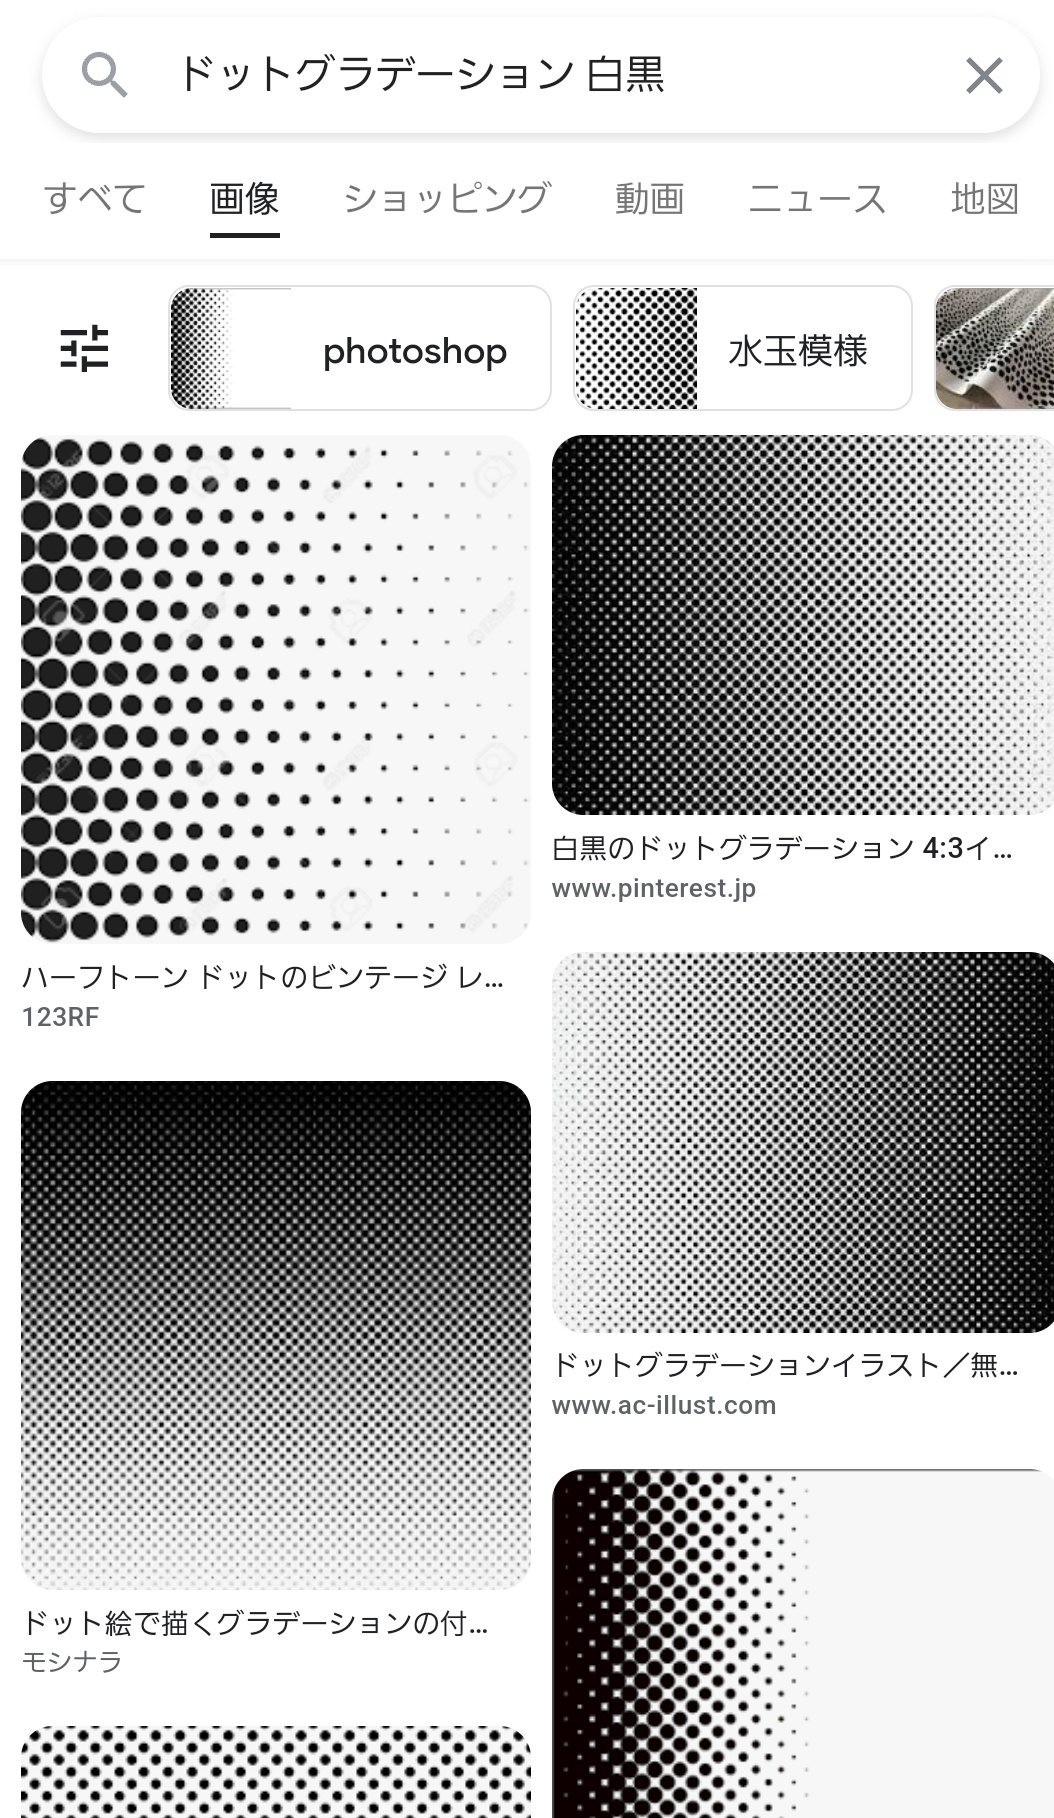 暁 戦力増強計画 Rt Bocchi491 Suzuki Koma 大阪コンデレ準備中でいらっしゃるみたいなので 小技をひとつ ドットグラデーション 白黒 で画像検索するとグラデ塗装しなくてもおしゃれグラデーションできますよ これを白 黒の境目に貼れば楽チン